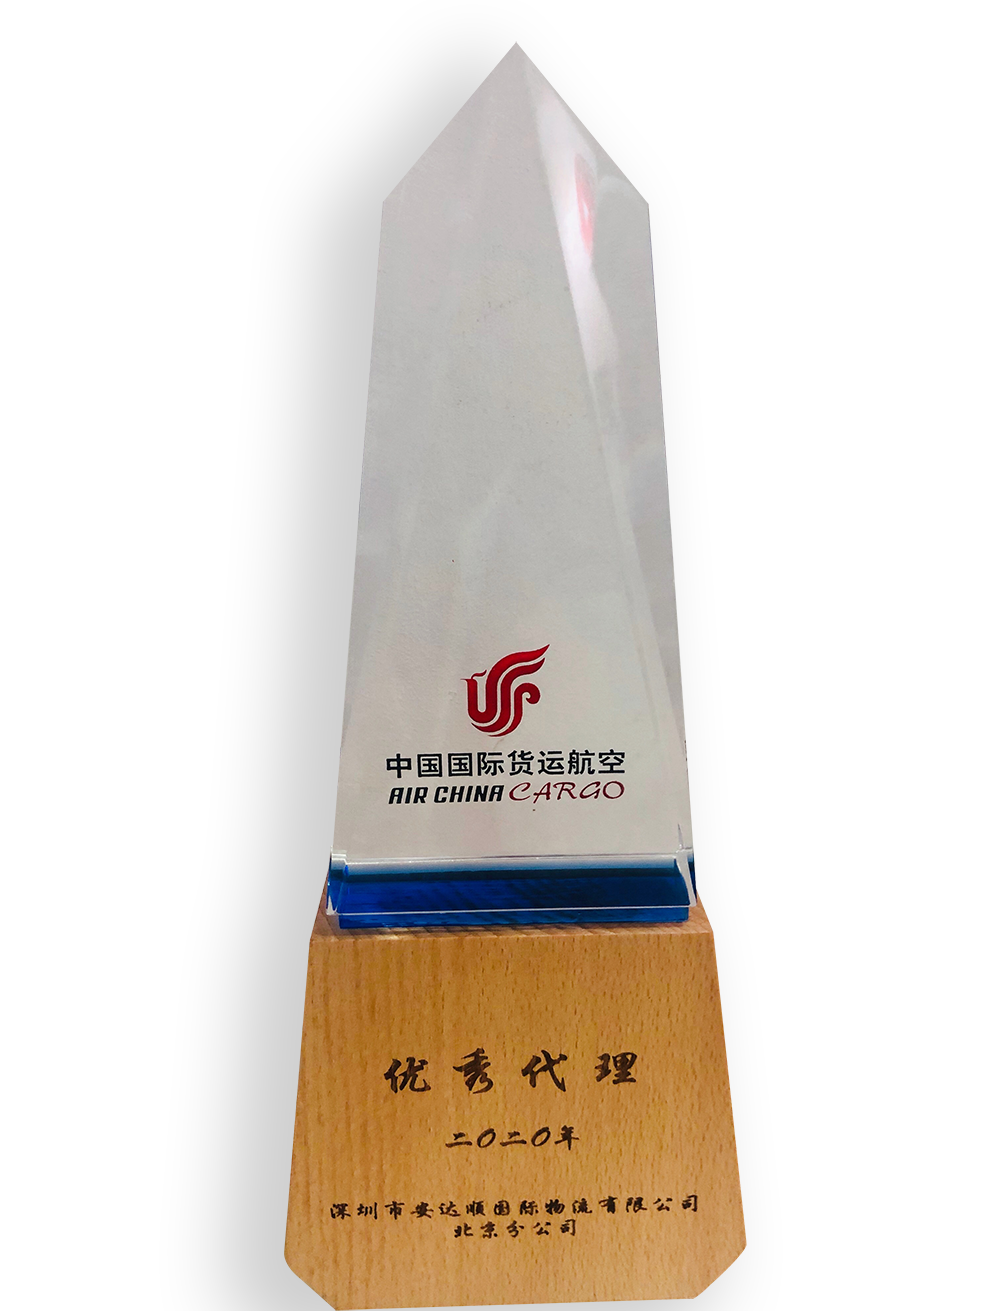 5、2021年 4月   北京分公司    荣获国航“2020年度优秀代理”称号1.png